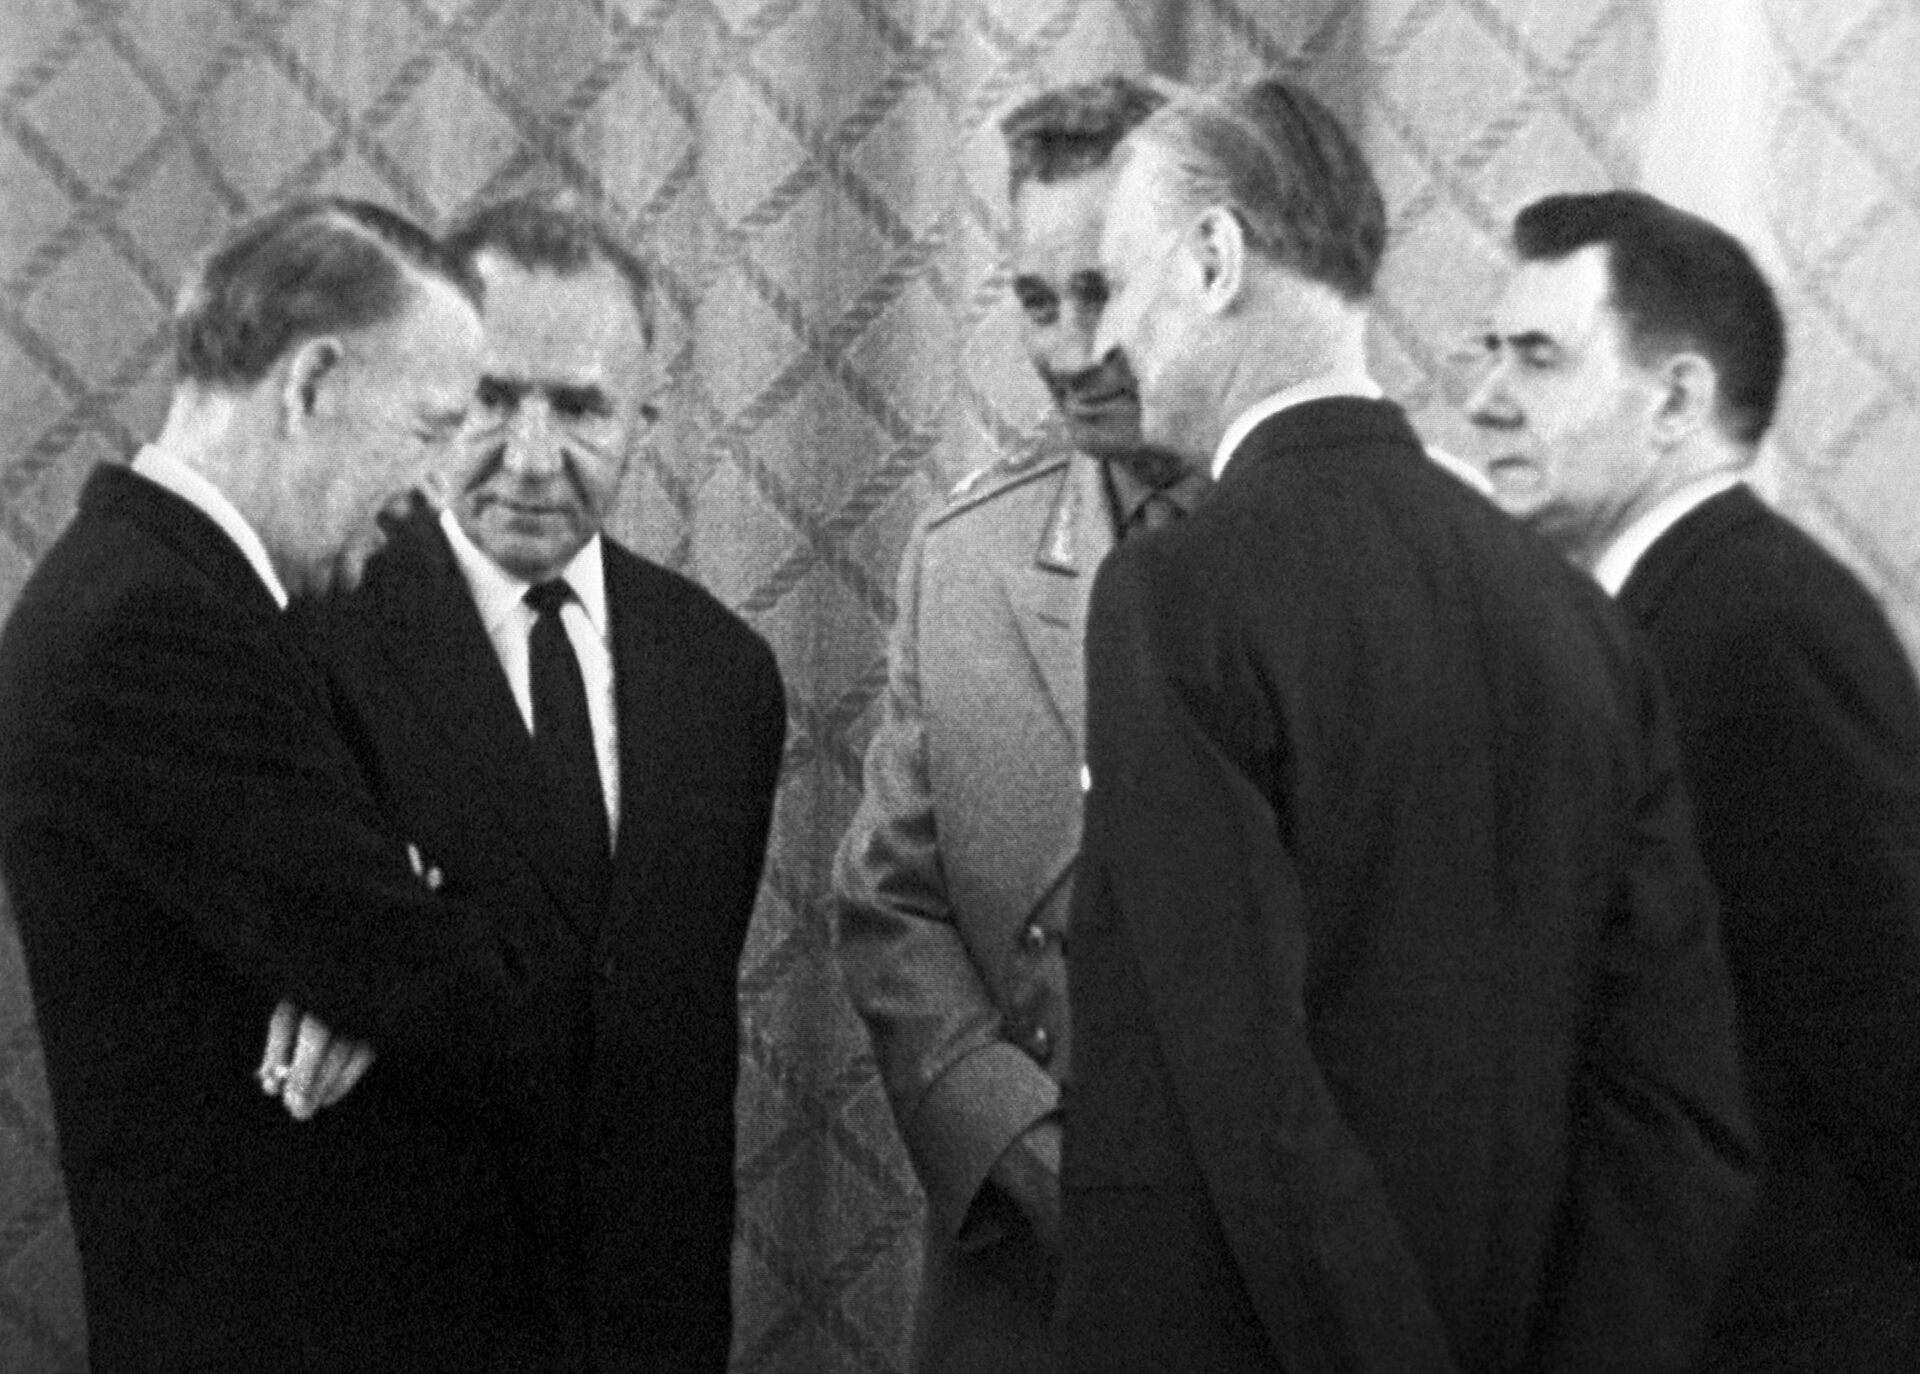 سفير الولايات المتحدة الأمريكية ليلين إ. تومبسون، إلى اليسار ، يتحدث مع رئيس الوزراء السوفيتي أليكسي كوسيجين، ووزير الدفاع السوفيتي أندريه جريتشكو والسفير البريطاني في الاتحاد السوفييتي جيفري هاريسون ووزير الخارجية السوفيتي أندريه جروميكو في التوقيع على معاهدة عدم انتشار الأسلحة النووية في موسكو يوم 1 يوليو عام 1968 - سبوتنيك عربي, 1920, 01.08.2022